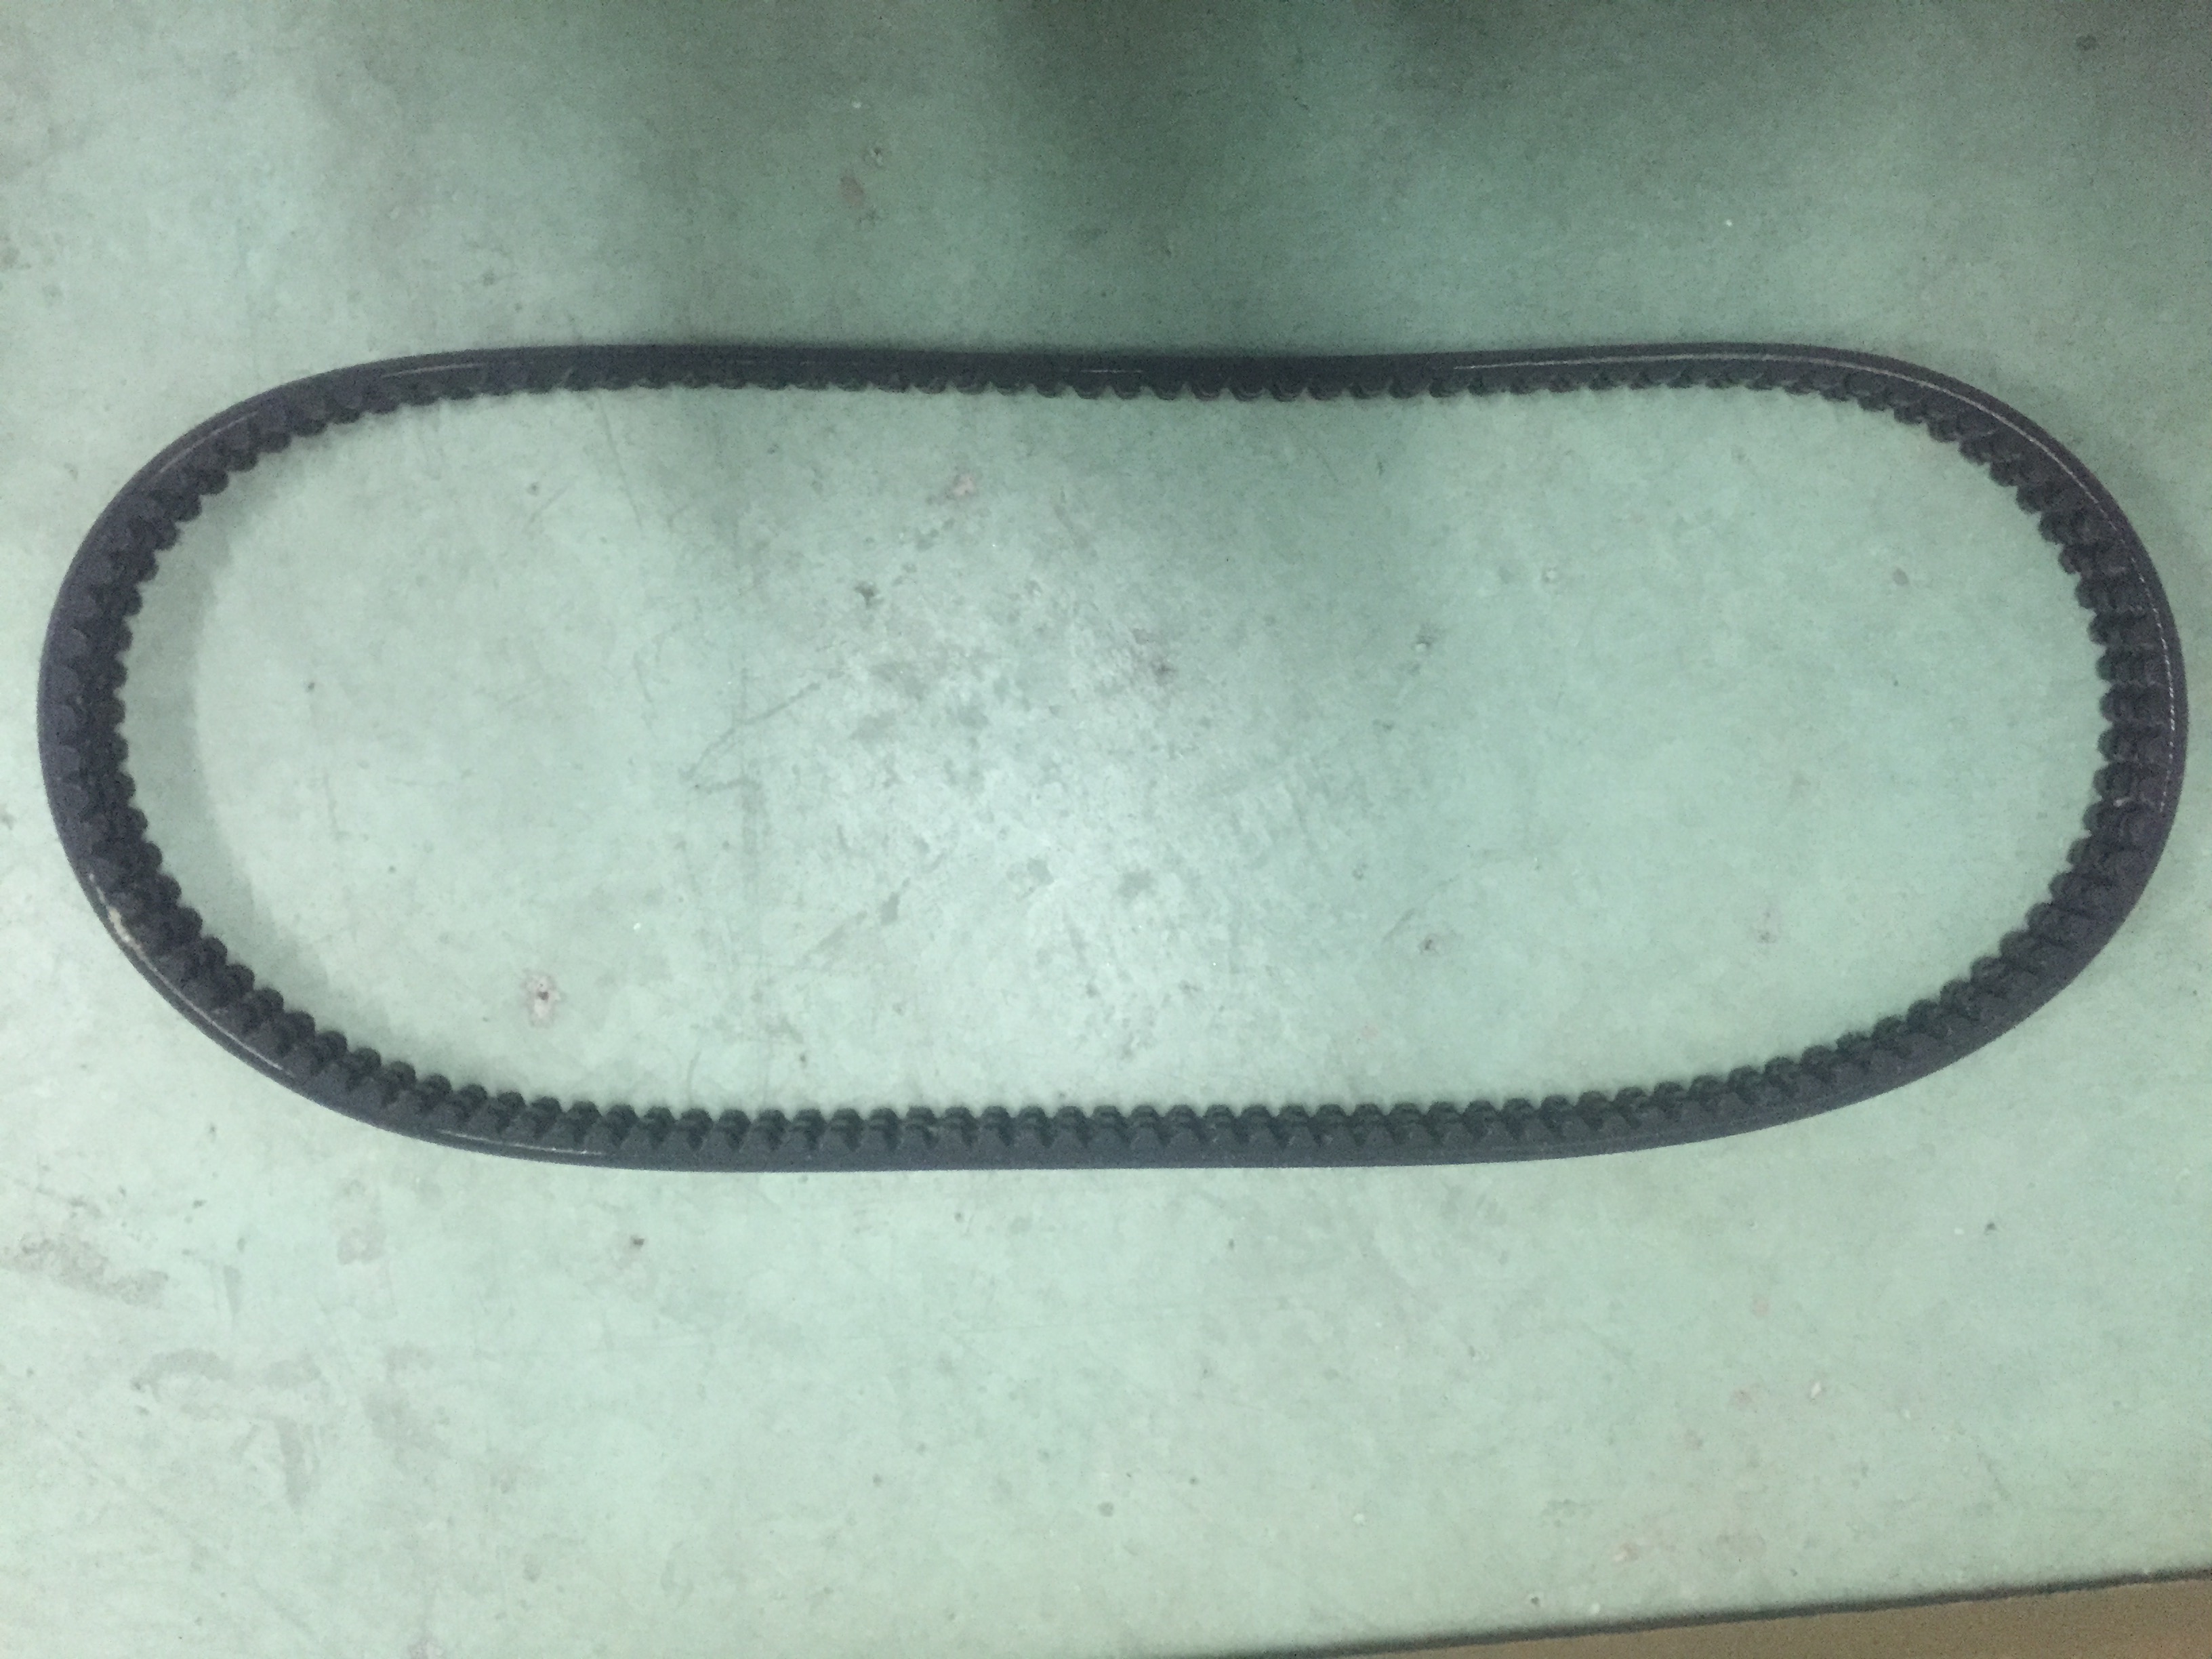 6736775 replacement belt fitting for BOBCAT skid steer Loader